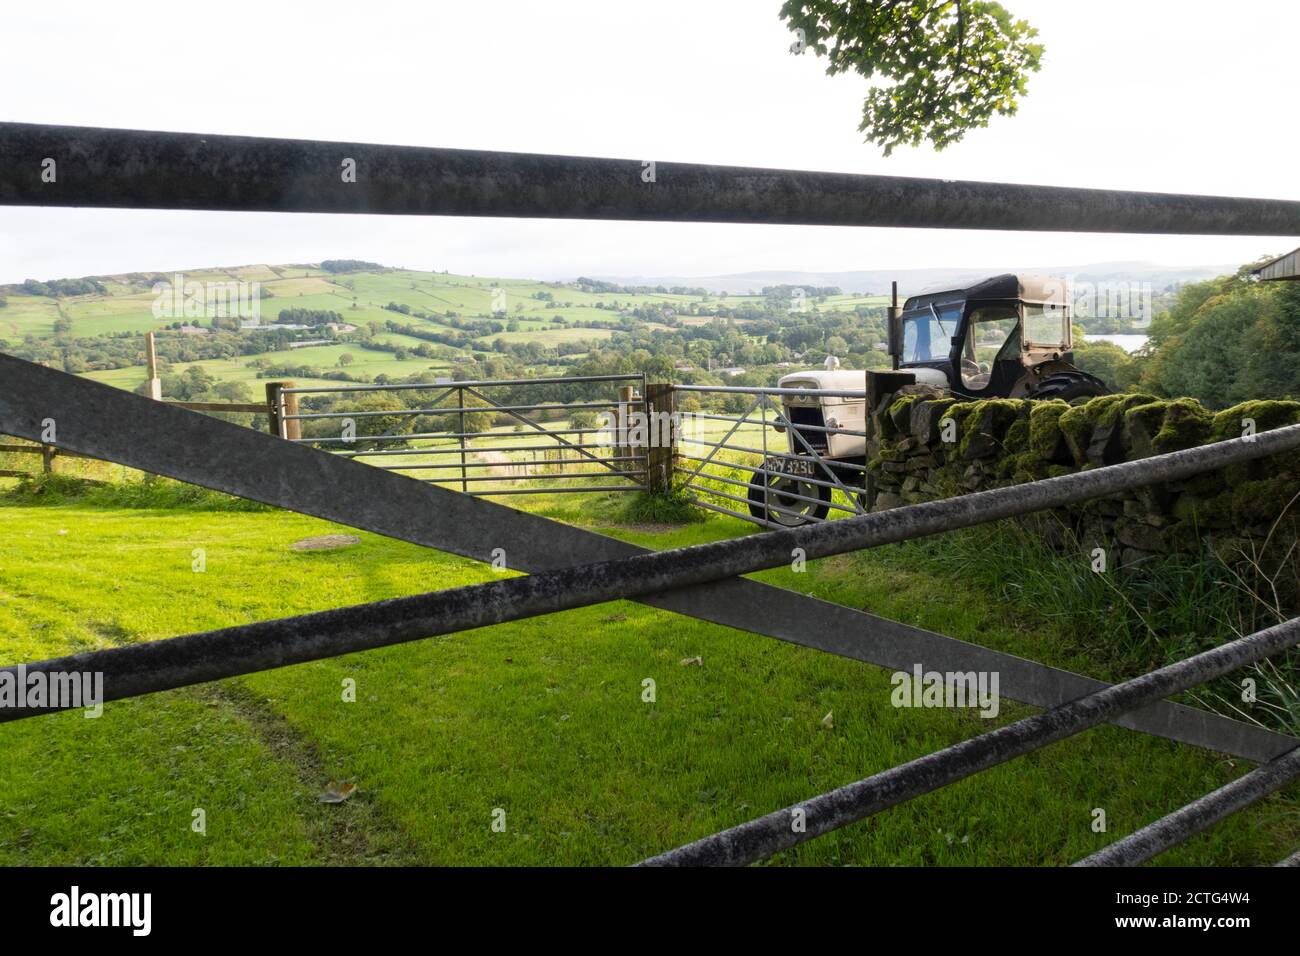 Le tracteur 880 David Brown est stationné dans un champ vert dans le Peak District Royaume-Uni Banque D'Images